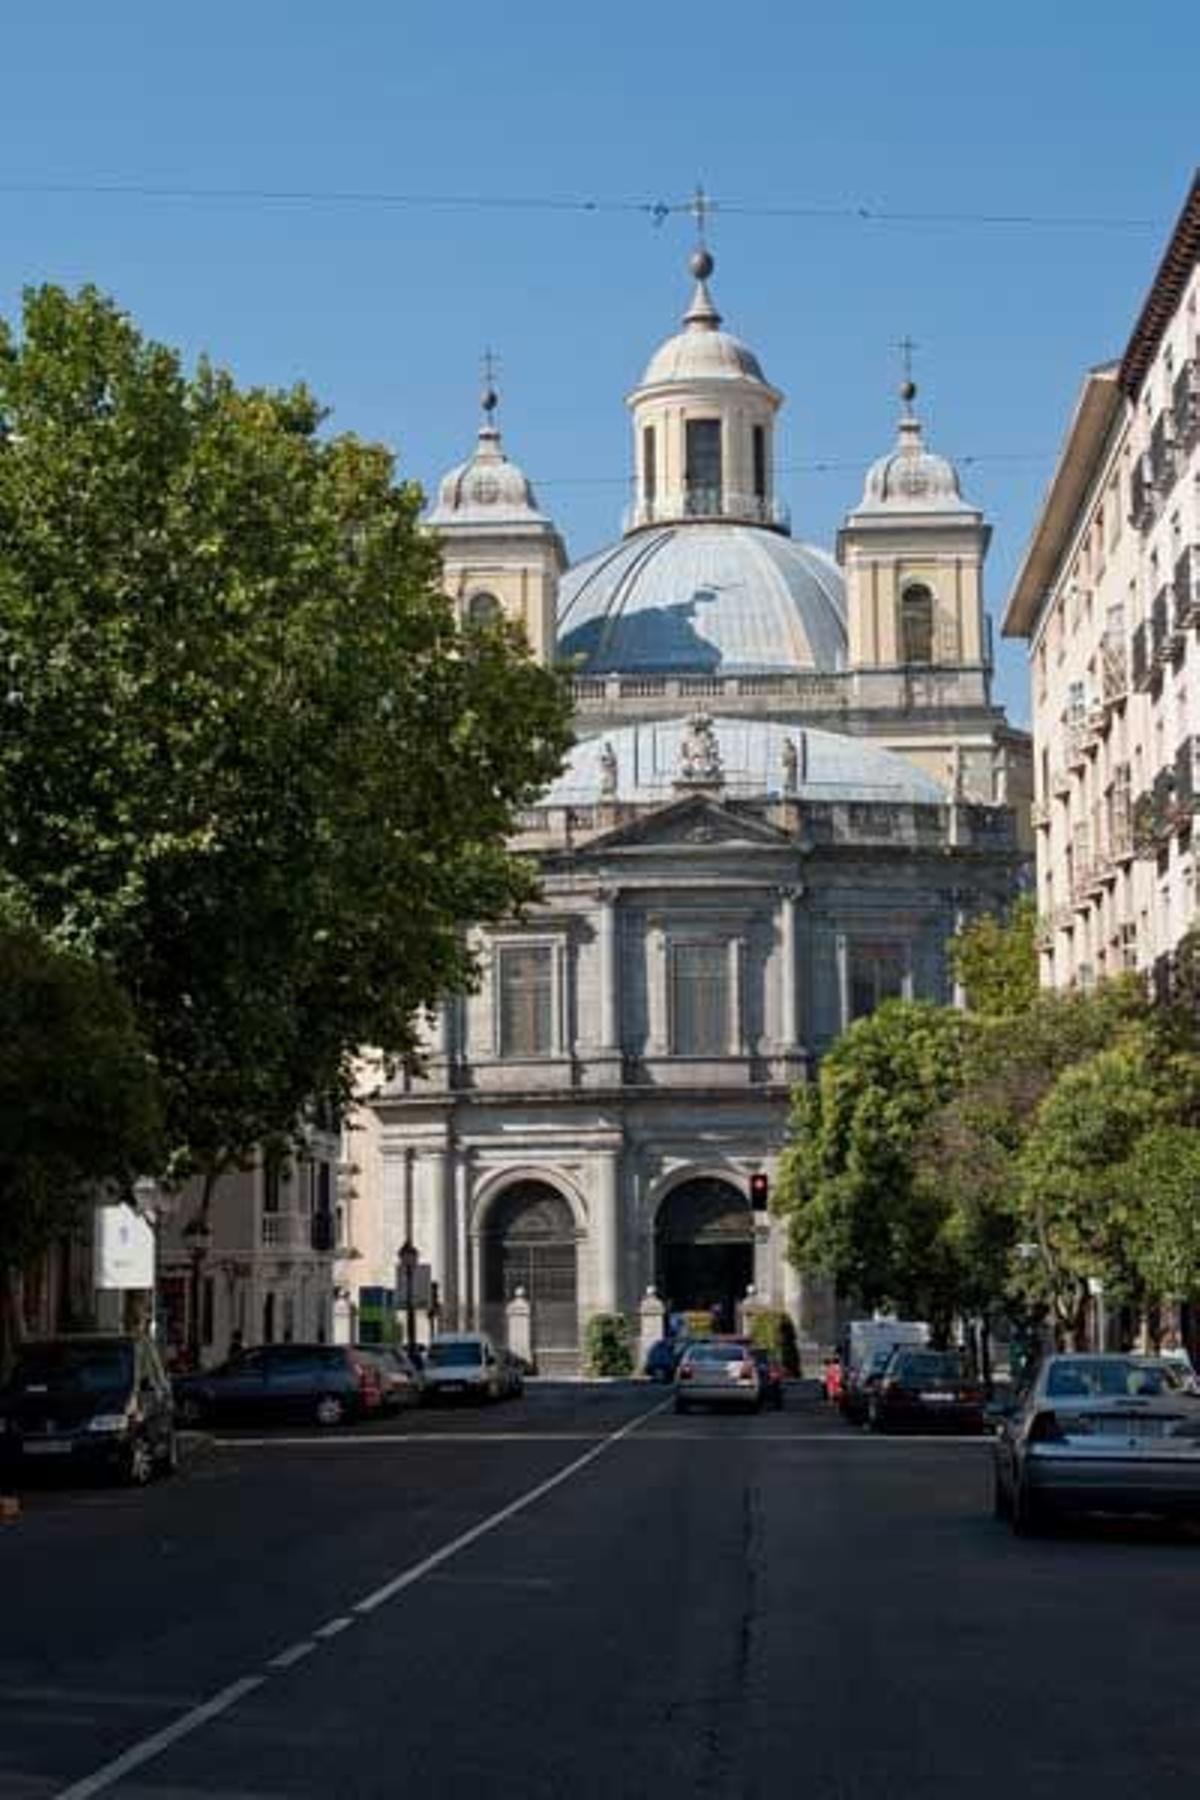 La Real Basílica de San Francisco el Grande, en la calle Bailén cuenta en su interior con cuadros de Goya y Zurbarán